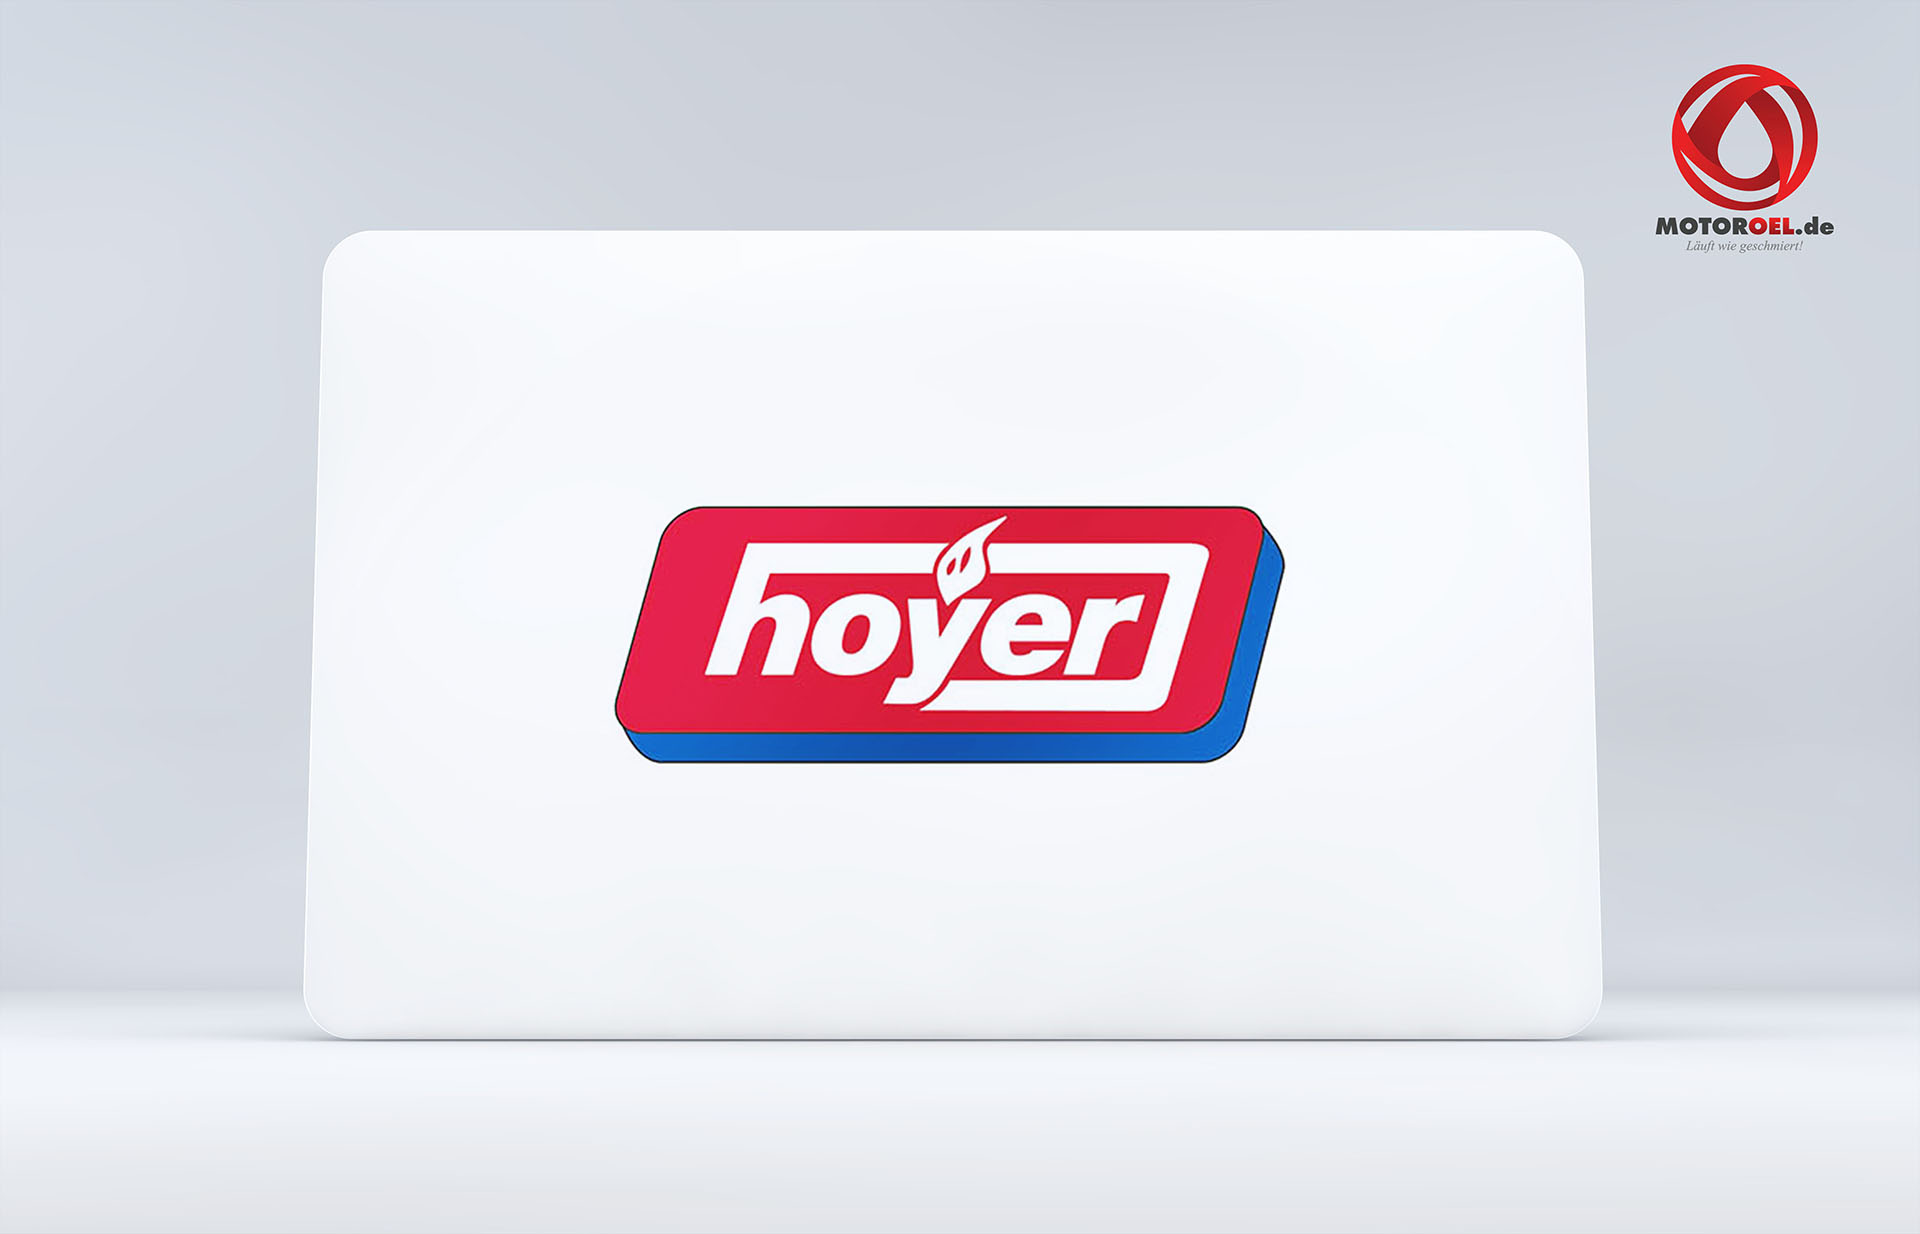 Hoyer AdBlue® für Dieselfahrzeuge